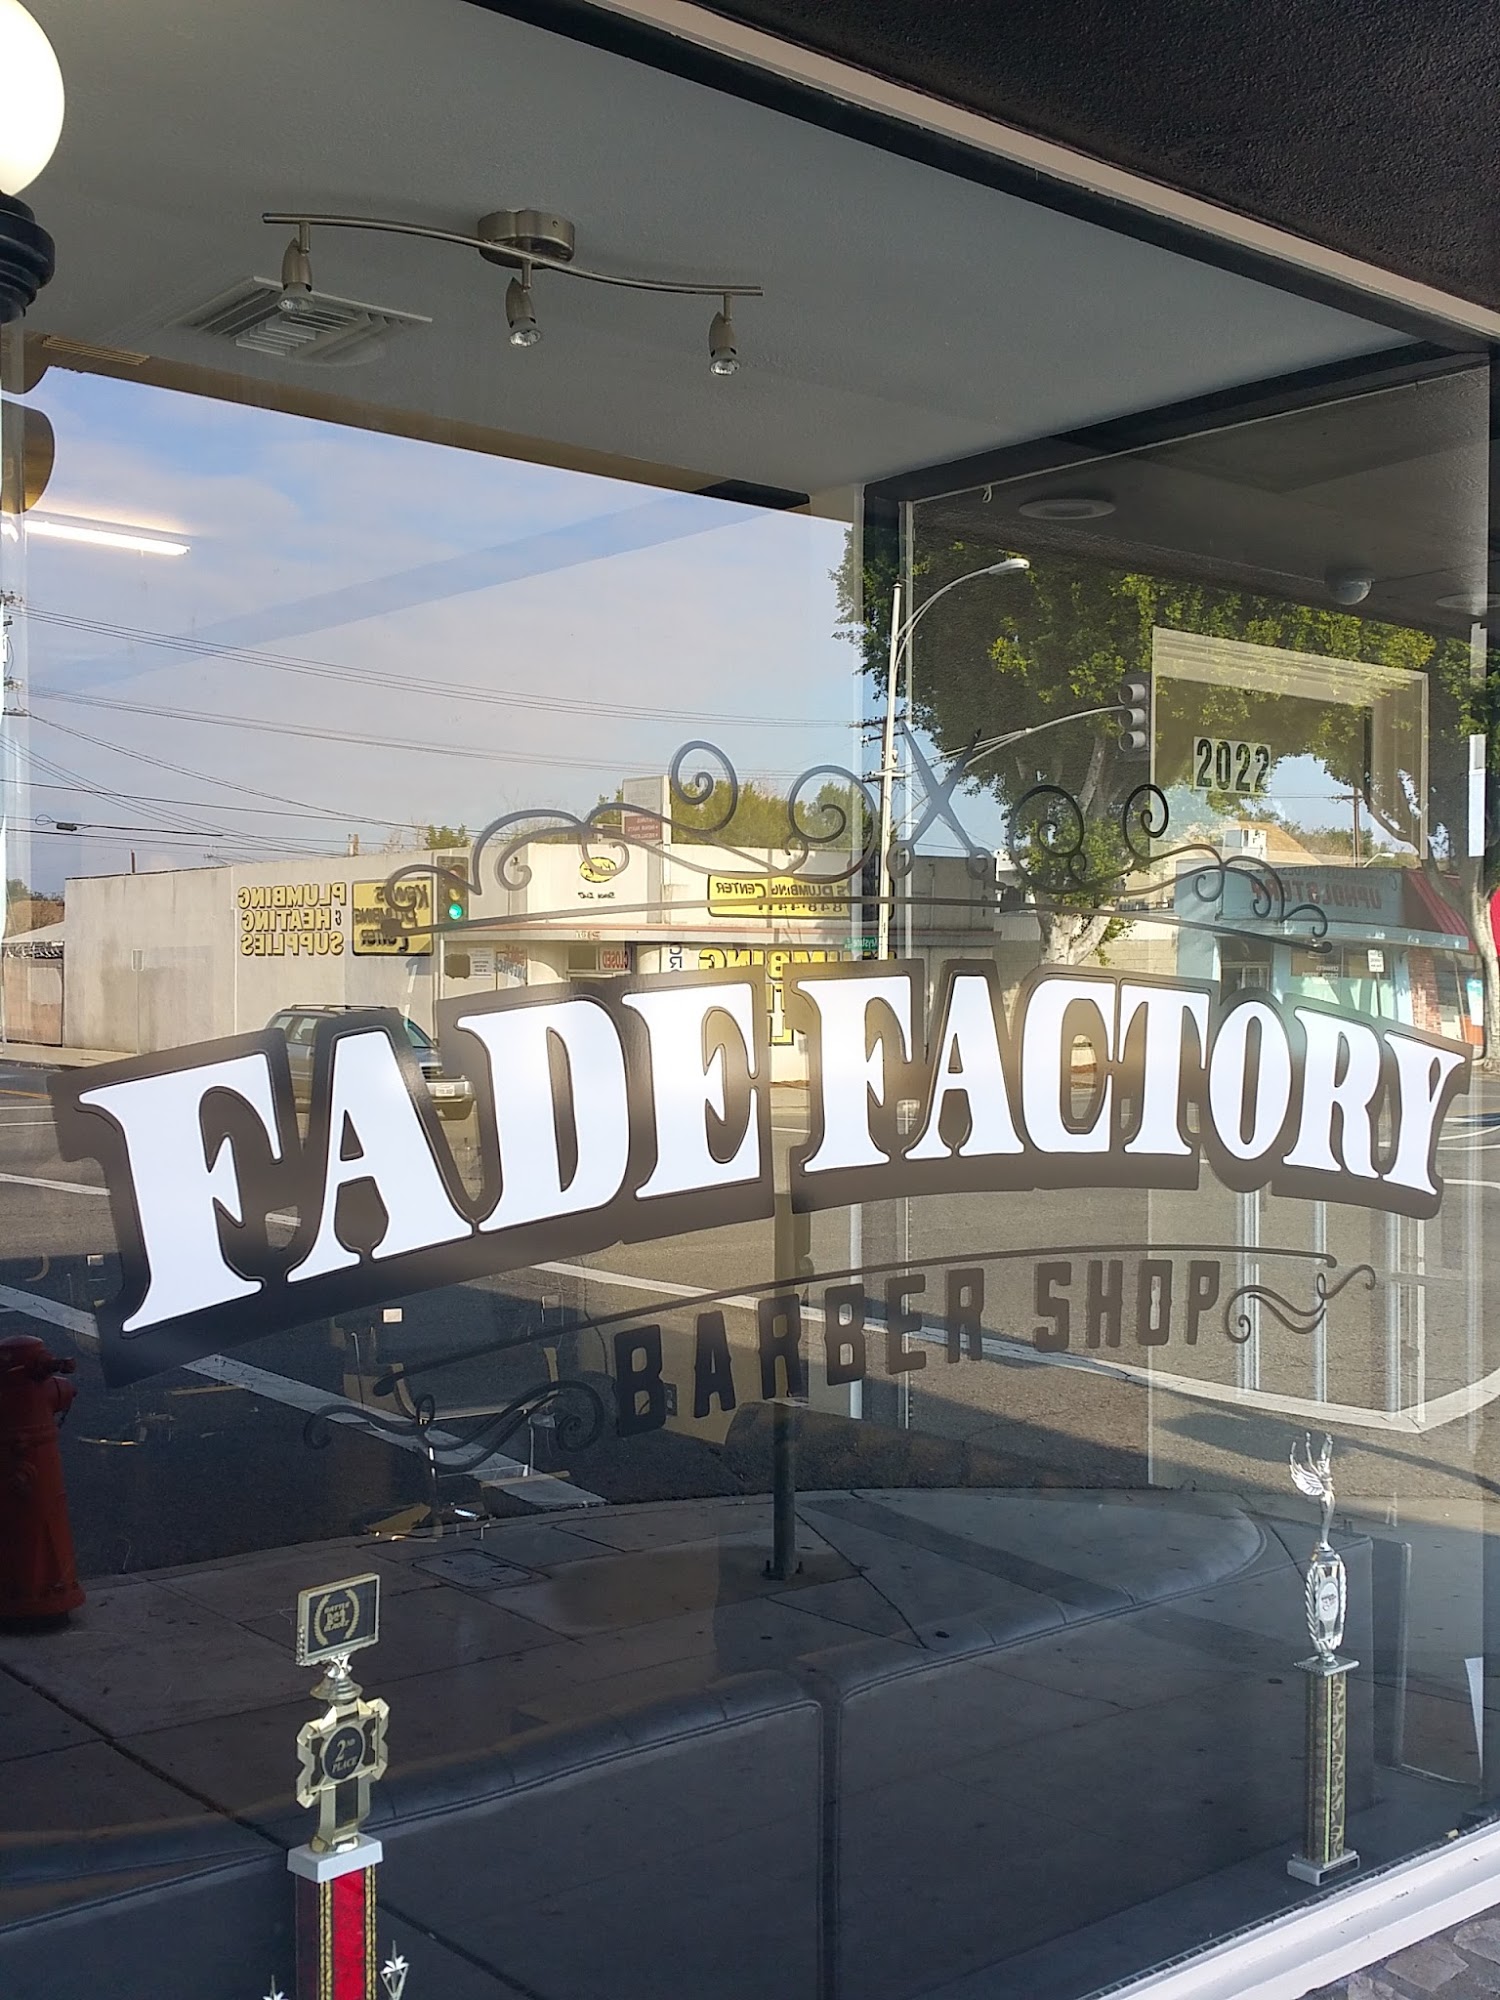 Fade Factory Barber Shop